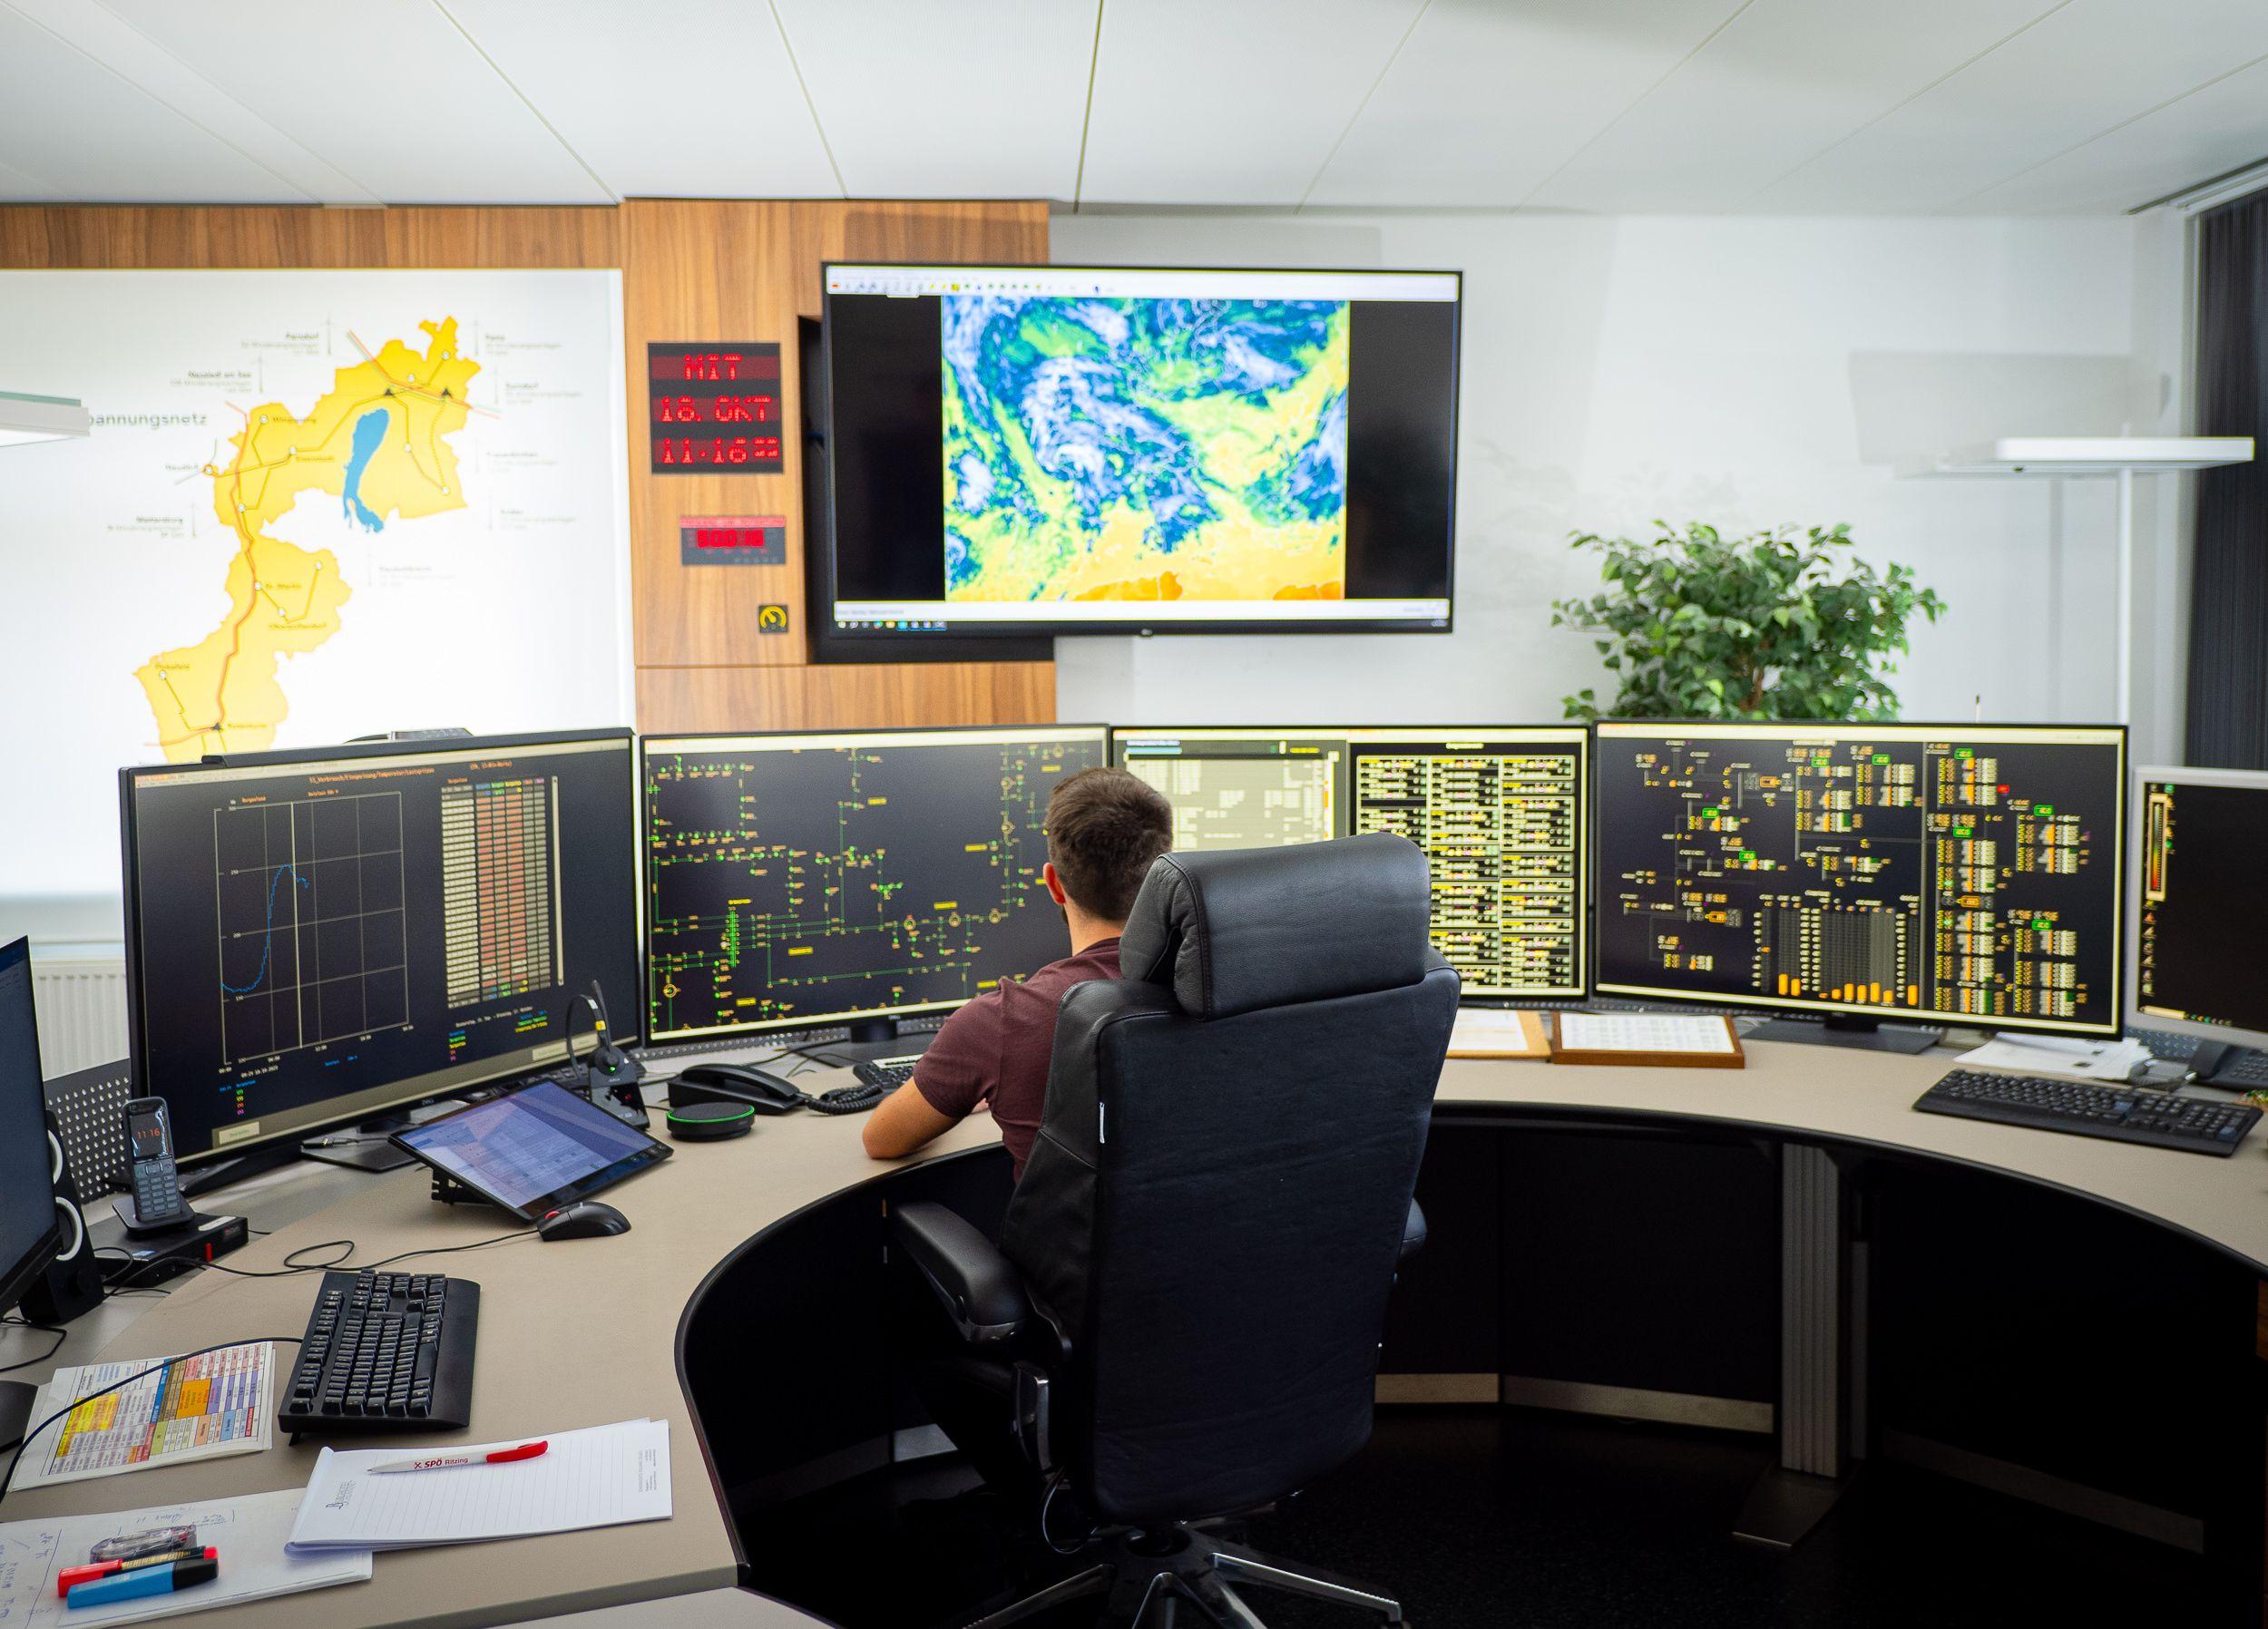 Ein Mitarbeiter überwacht Energie-Netzwerke auf mehreren Bildschirmen in einer Kontrollraum-Umgebung.